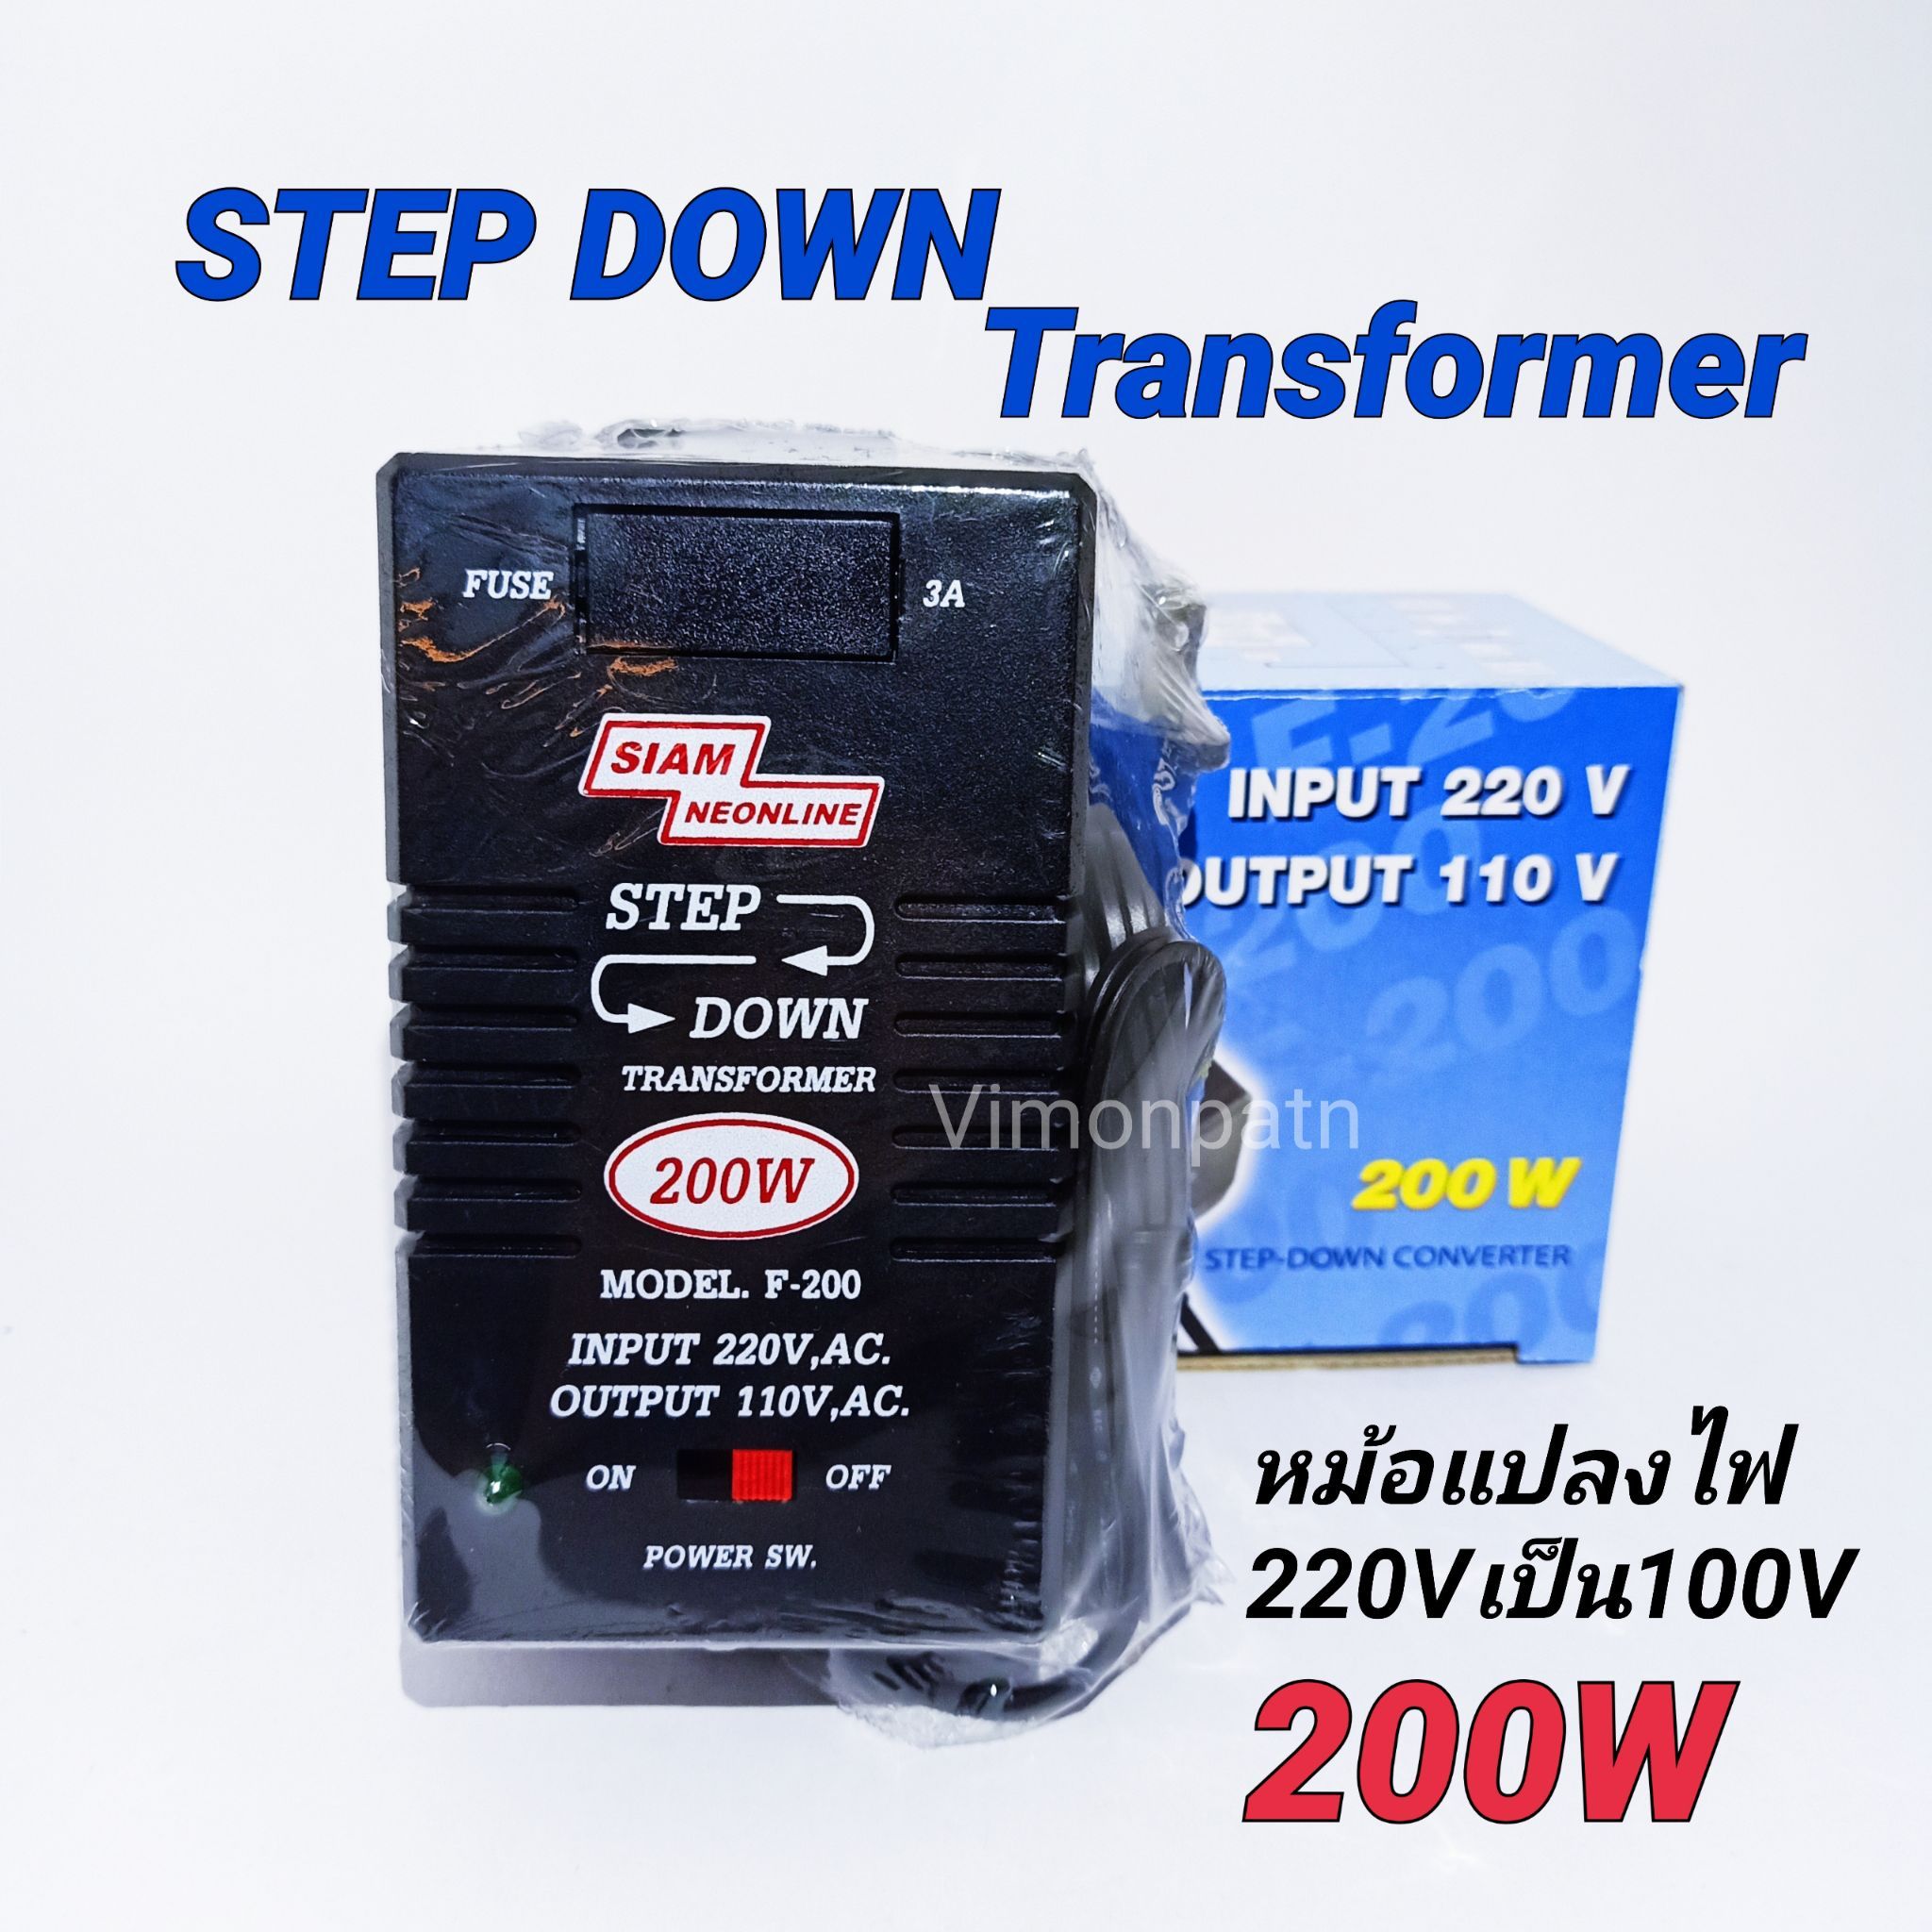 หม้อแปลงไฟ 220V เป็น 110V หม้อแปลงไฟ 110V Step Down Transformer 200W สยามนีออน รุ่น F-200